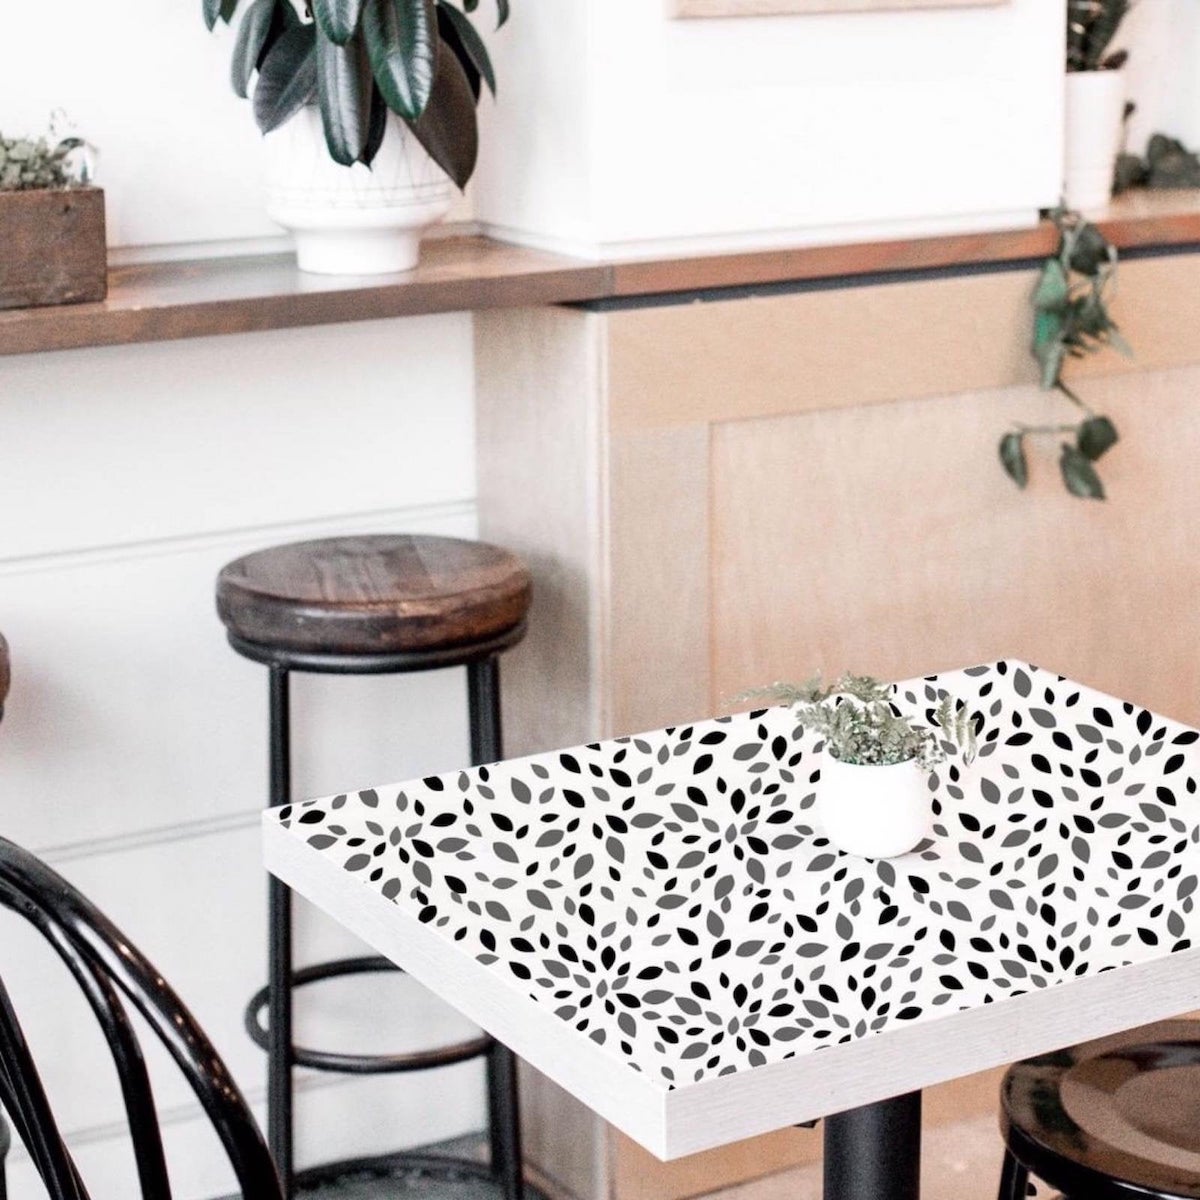 déco personnalisée table cuisine papier adhésif à pois noir et blanc tabouret rond bois et métallique